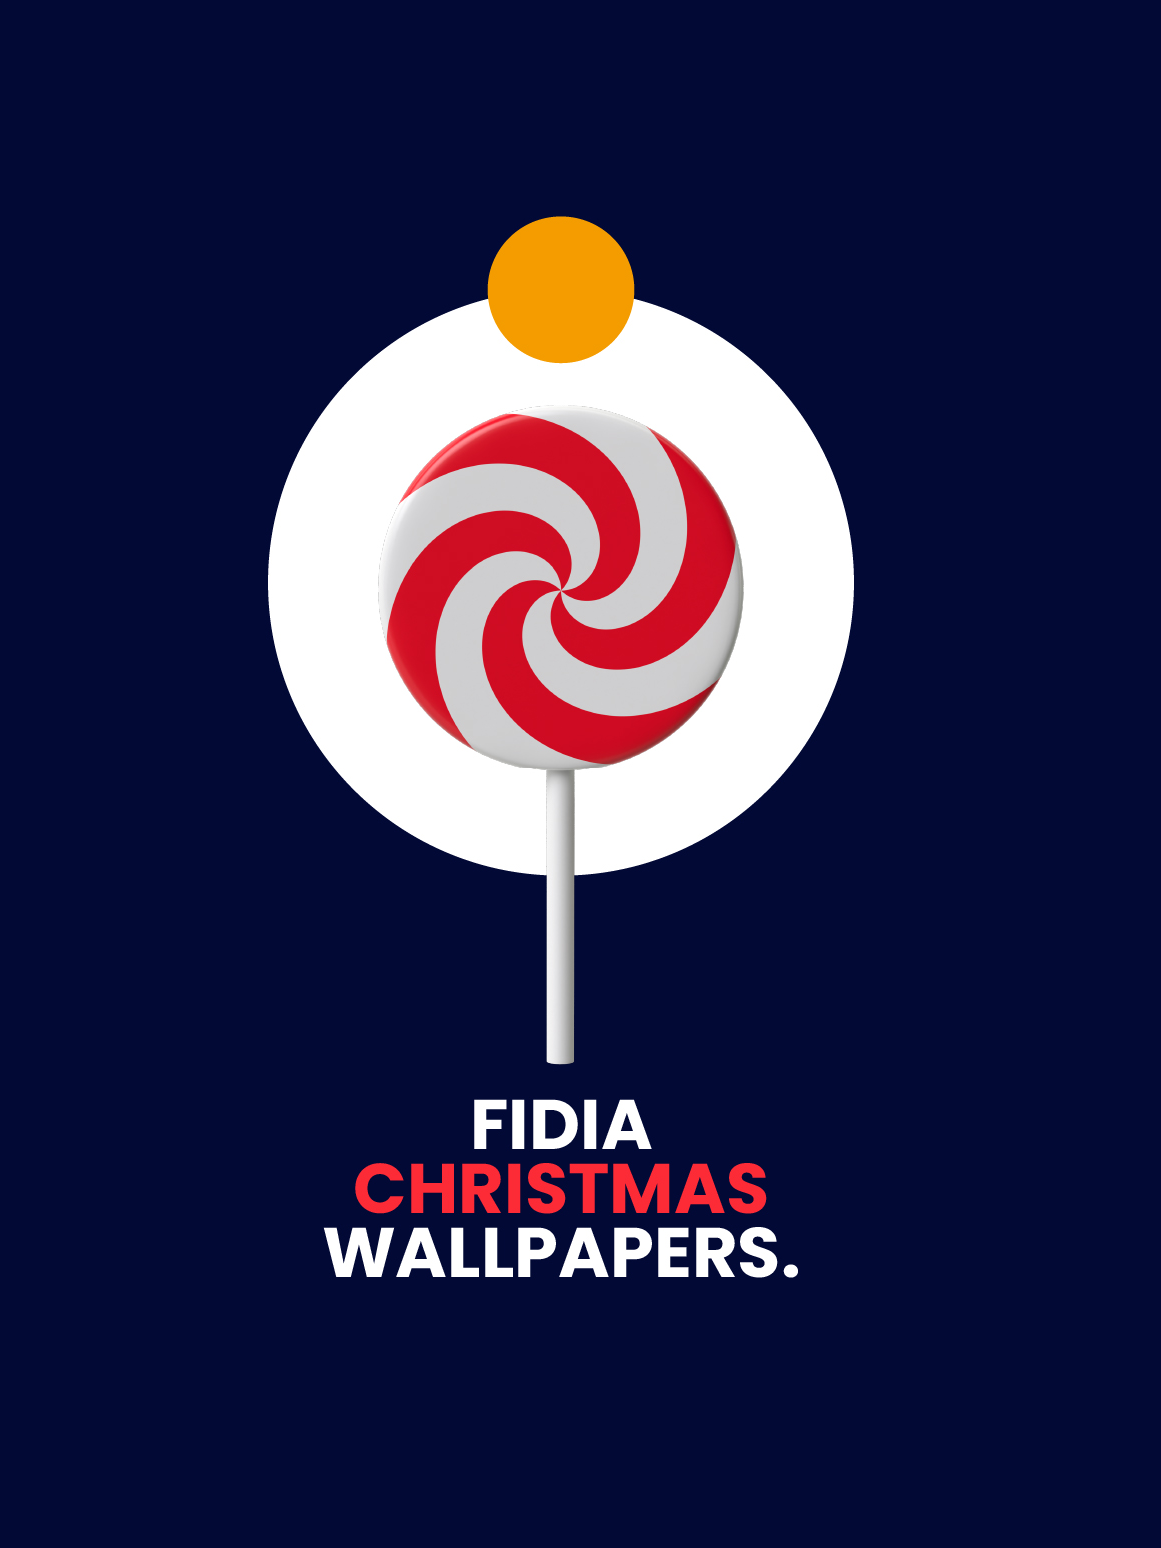 Fidia Wallpapers [Christmas Theme]